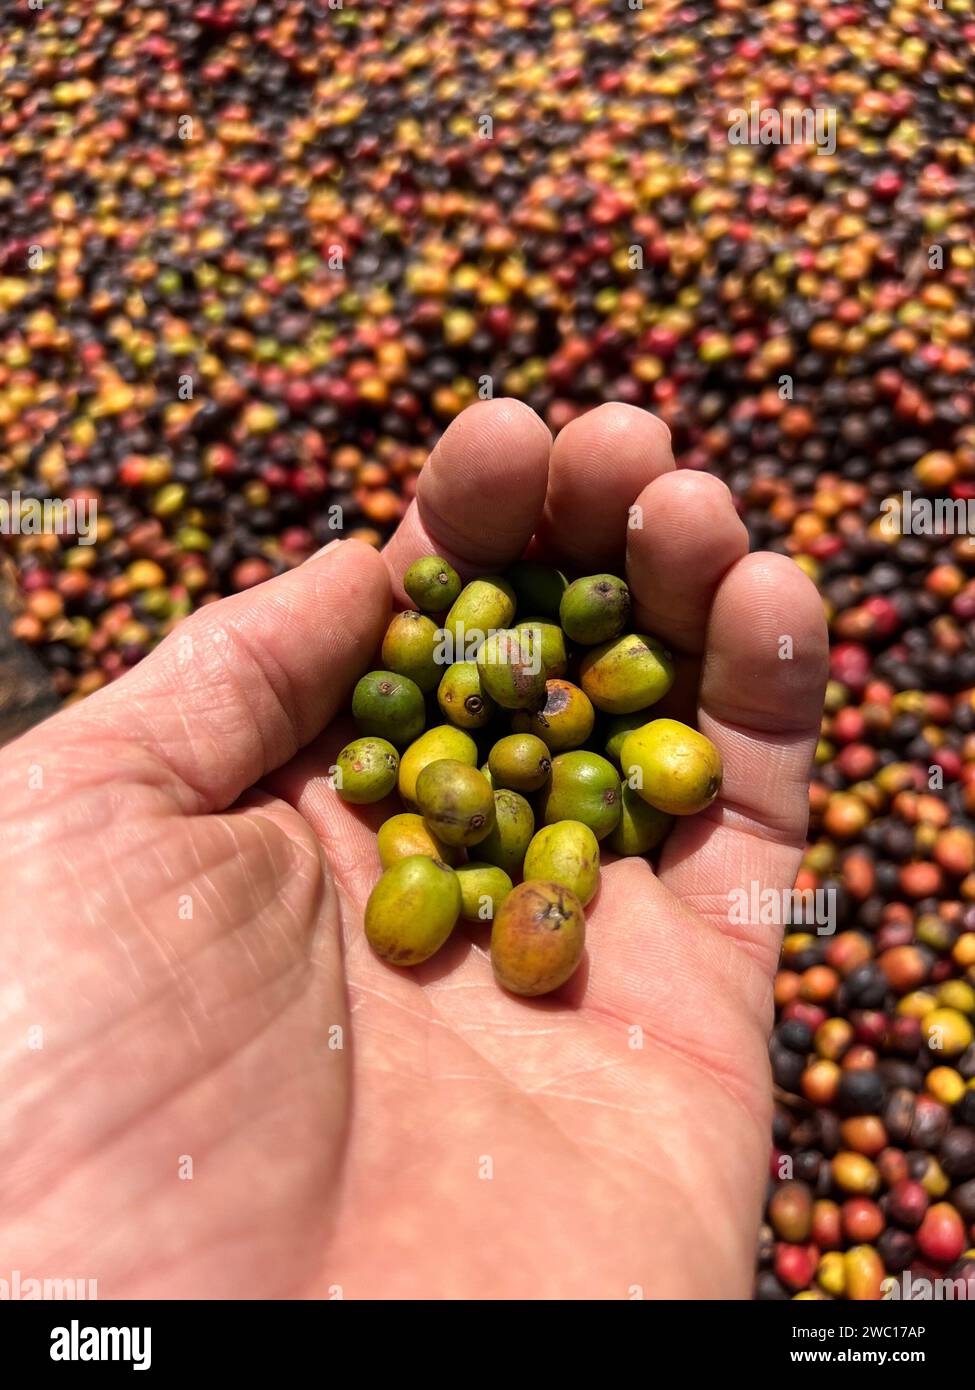 Mains montrant des cerises de café transformées par le procédé Honey dans la région de Sidama, Ethiopie Banque D'Images